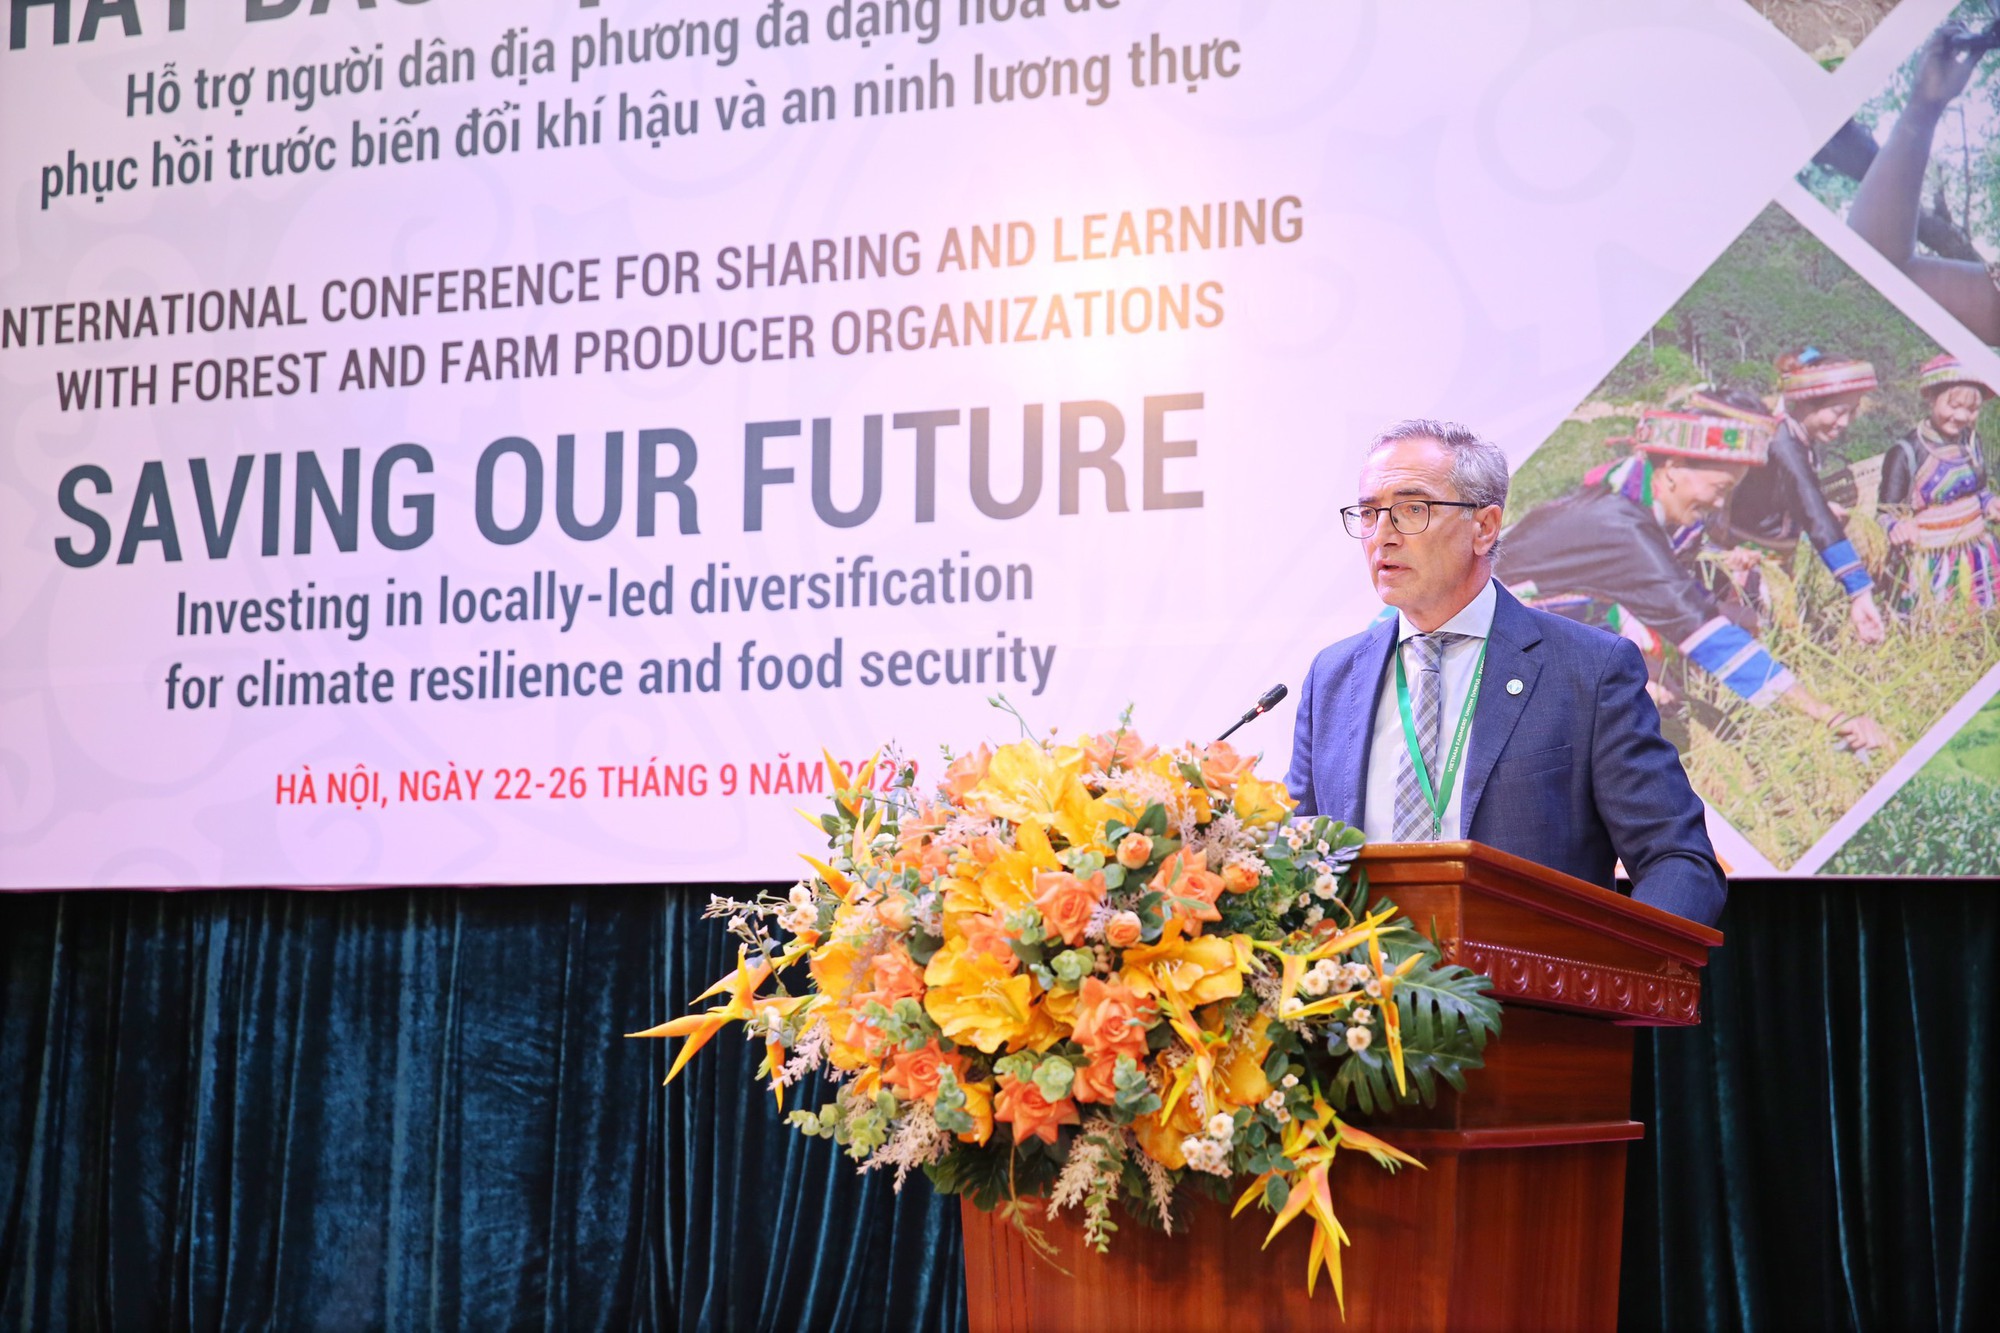 Hội Nông dân Việt Nam tổ chức Hội thảo quốc tế chia sẻ kinh nghiệm giữa các tổ chức sản xuất rừng và trang trại - Ảnh 6.